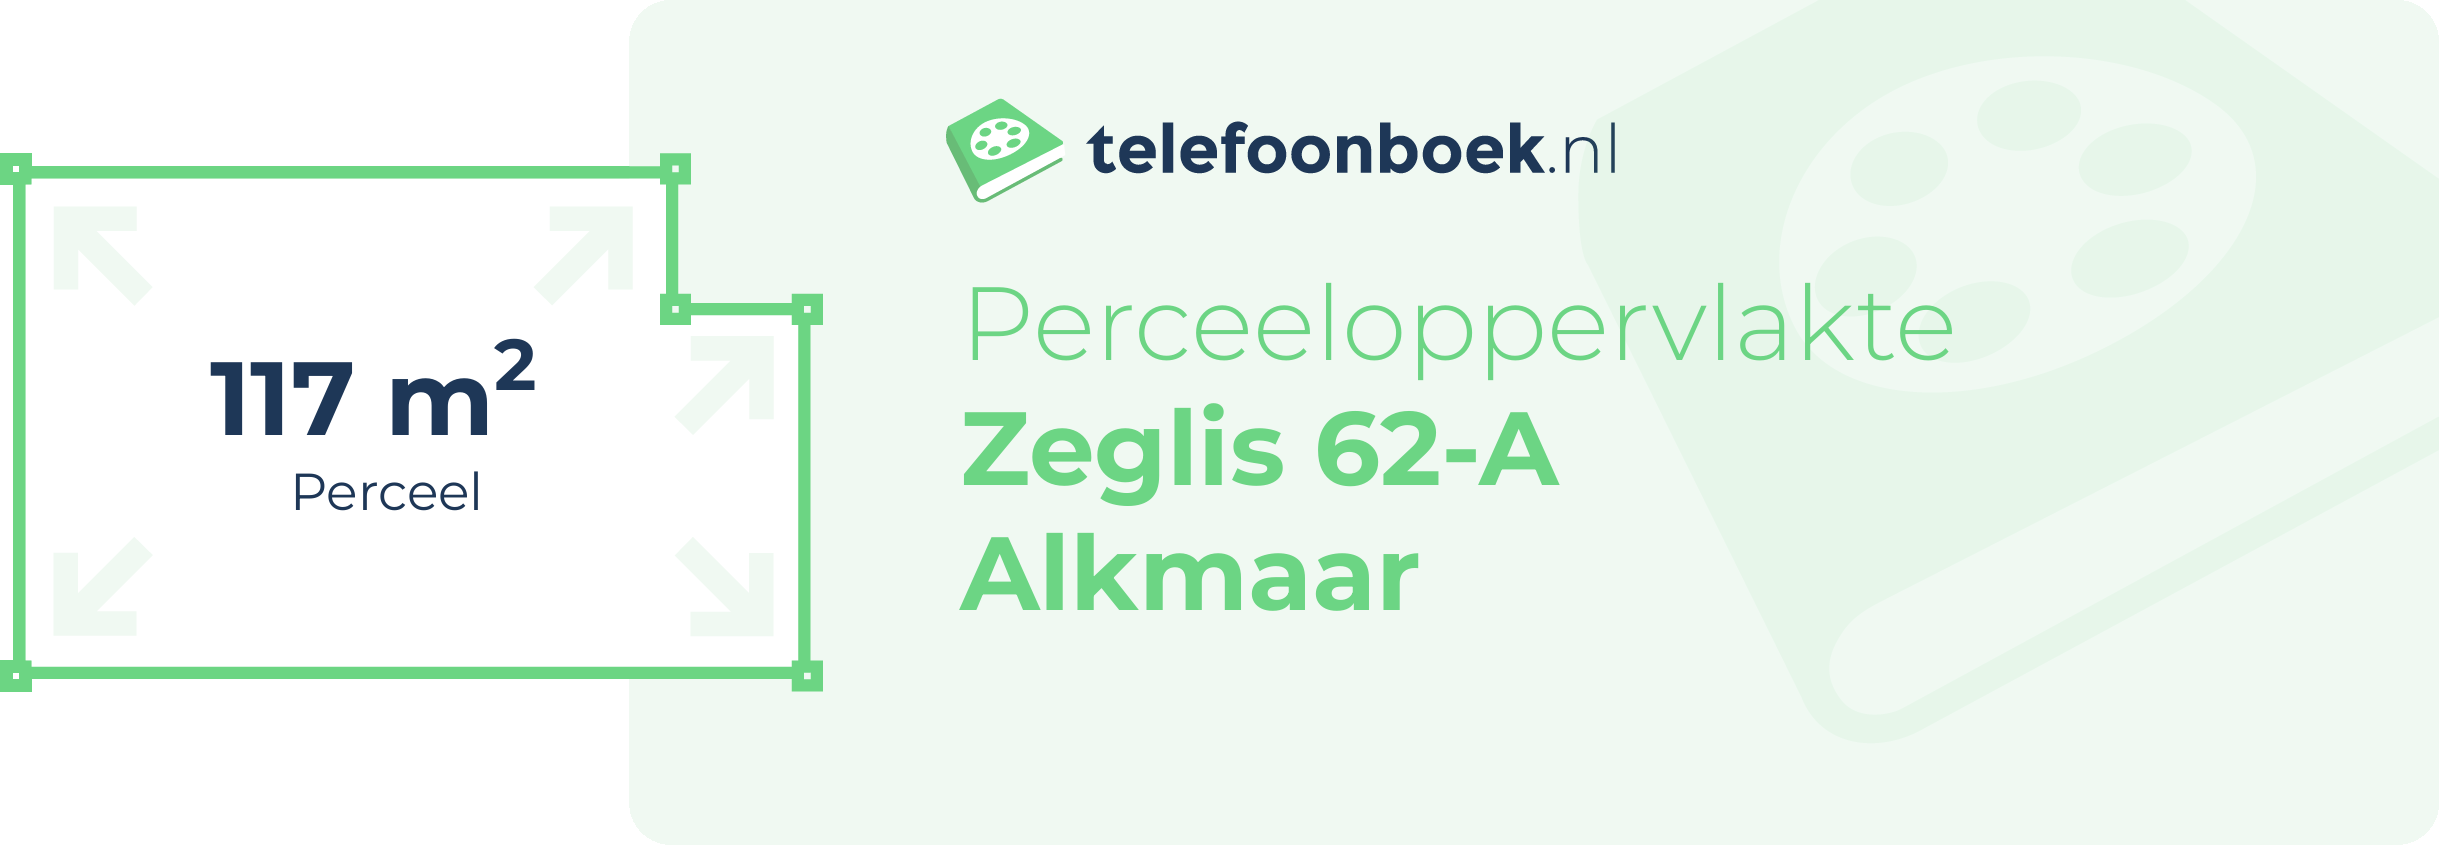 Perceeloppervlakte Zeglis 62-A Alkmaar